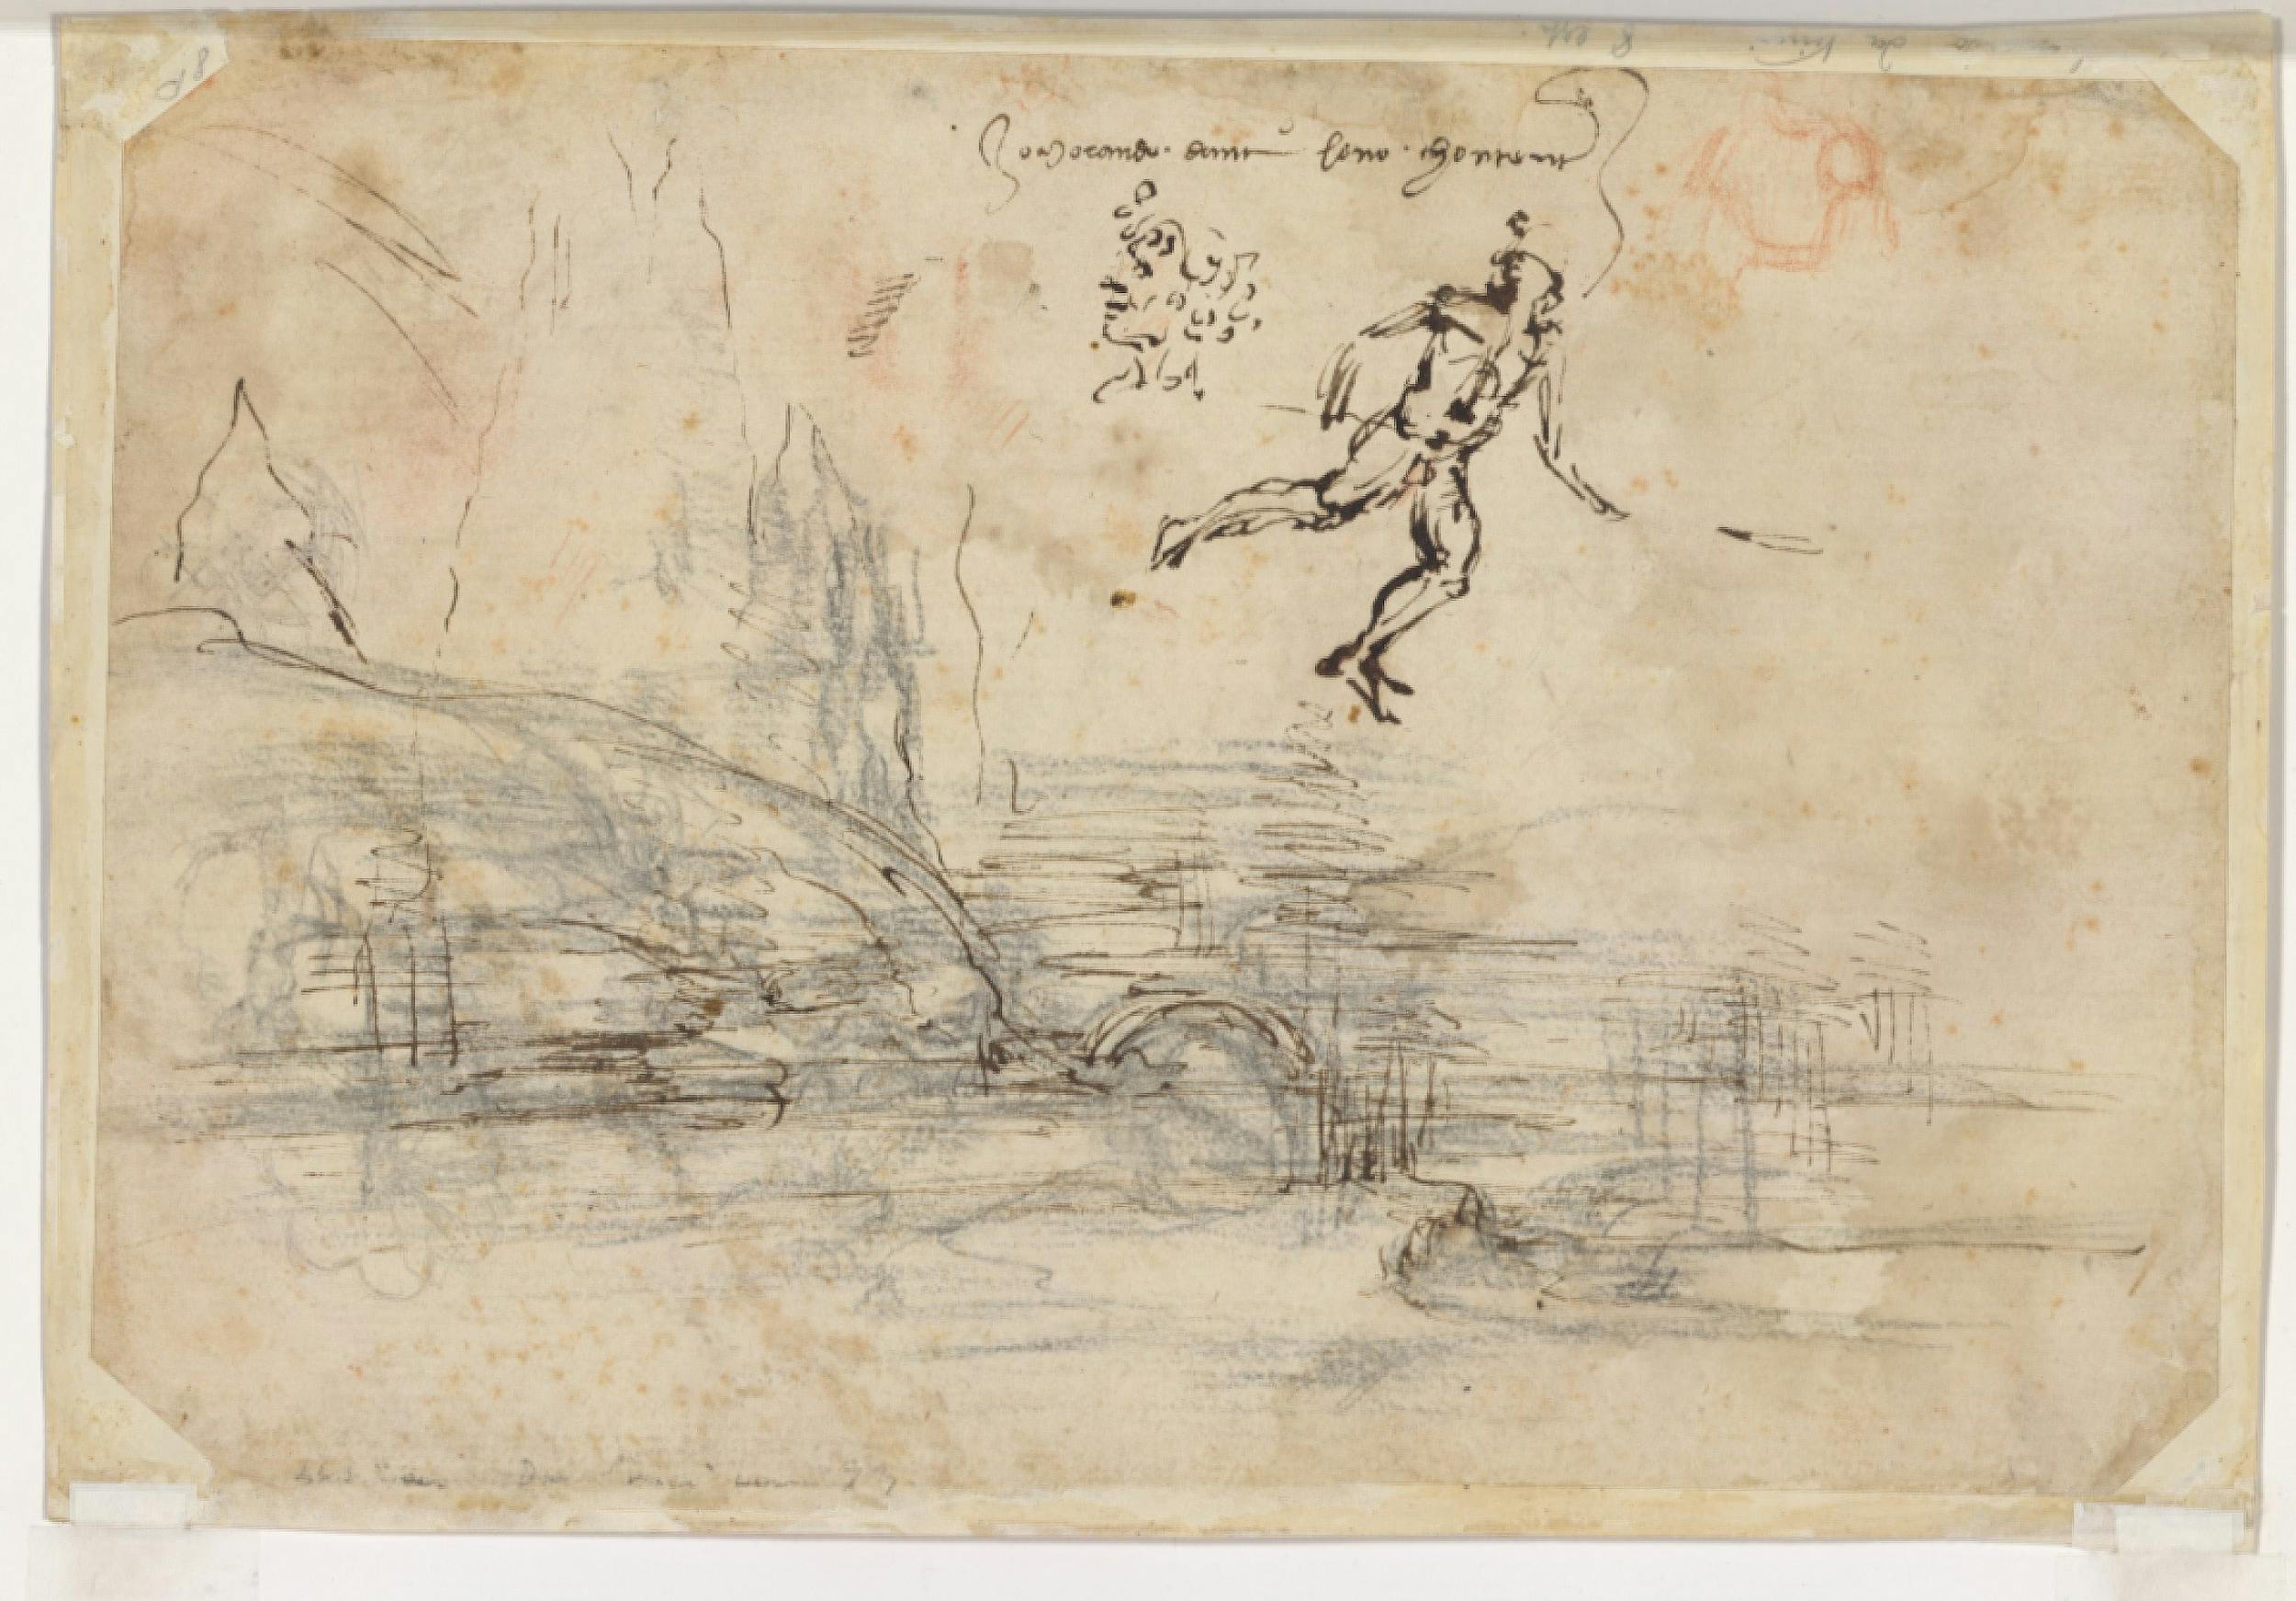 Leonardo Da Vinci, Paesaggio, inv. 8P, verso, indagini diagnostiche.